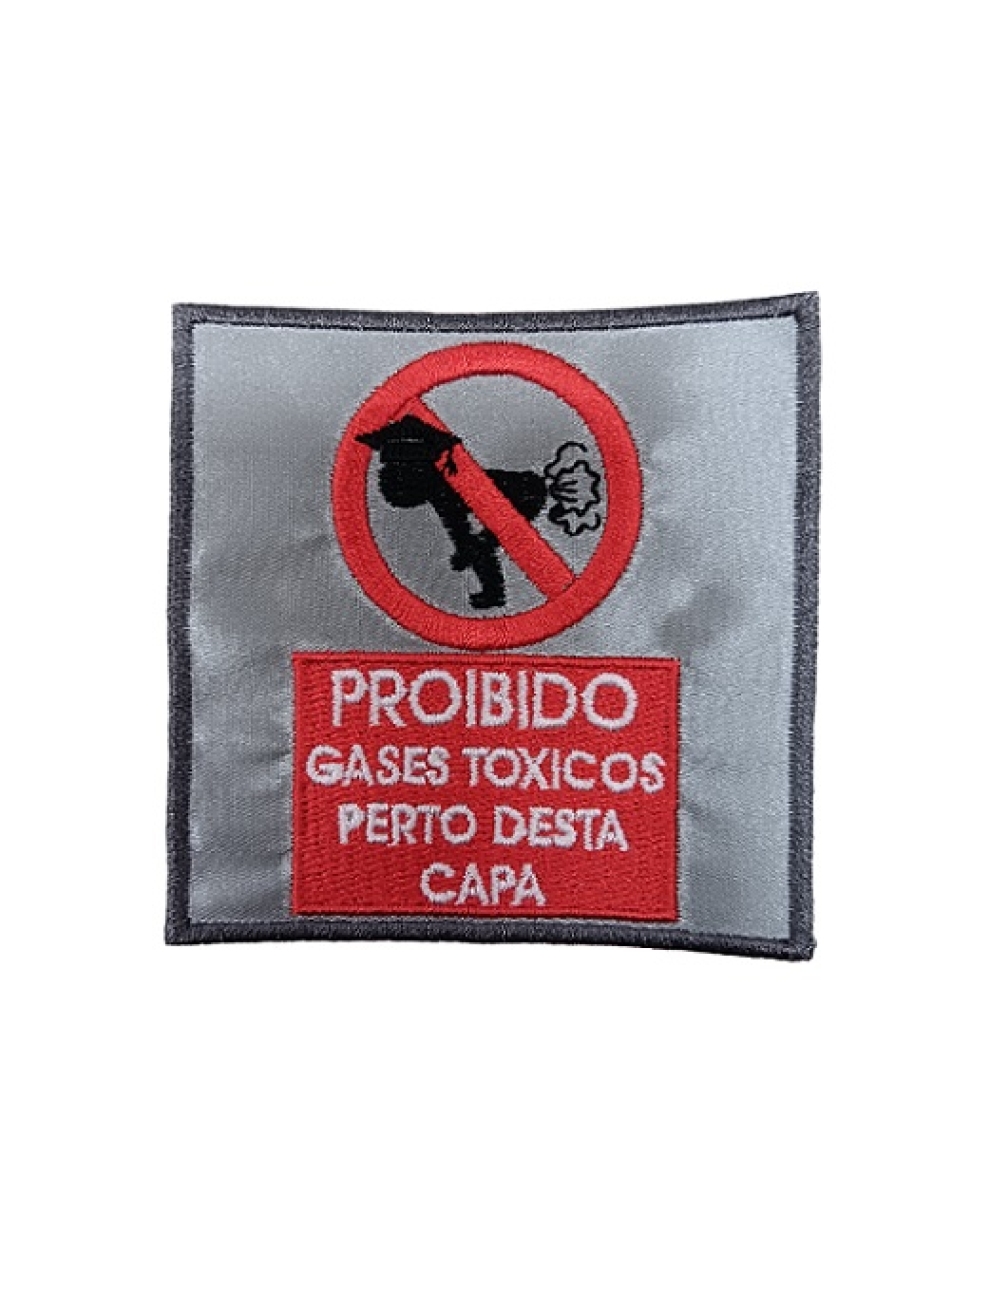 Proibido Gases Tóxicos Perto Desta Capa